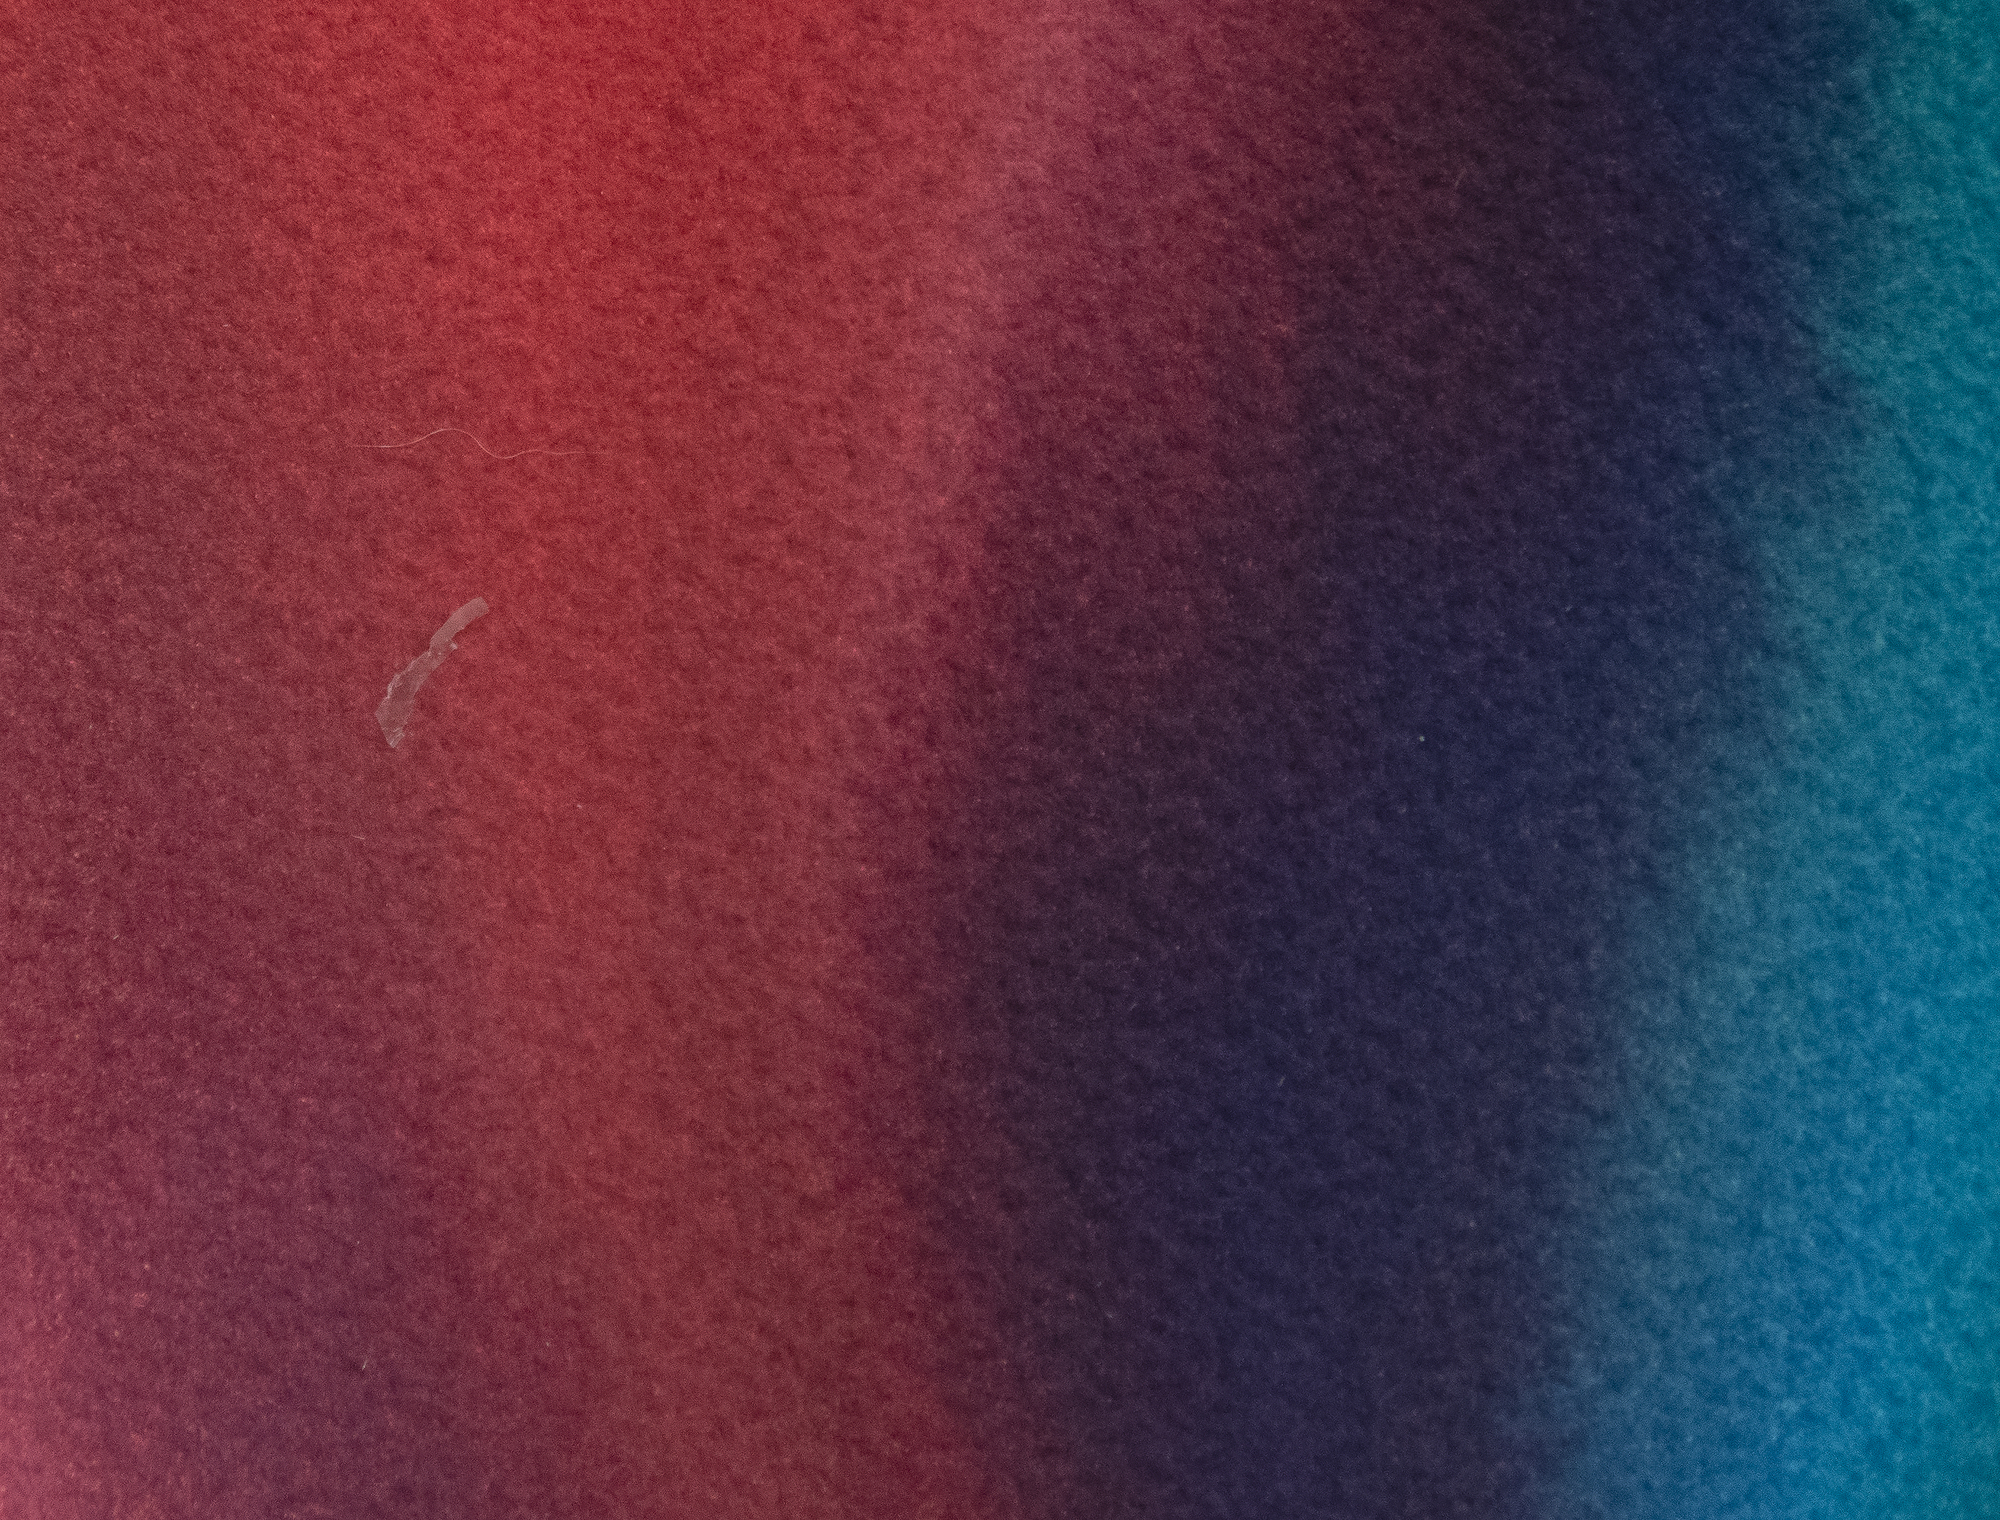 بول جنكنز-بدون عنوان-ألوان المائية والحبر علي الورق-29 3/4 x 42 3/4 في.